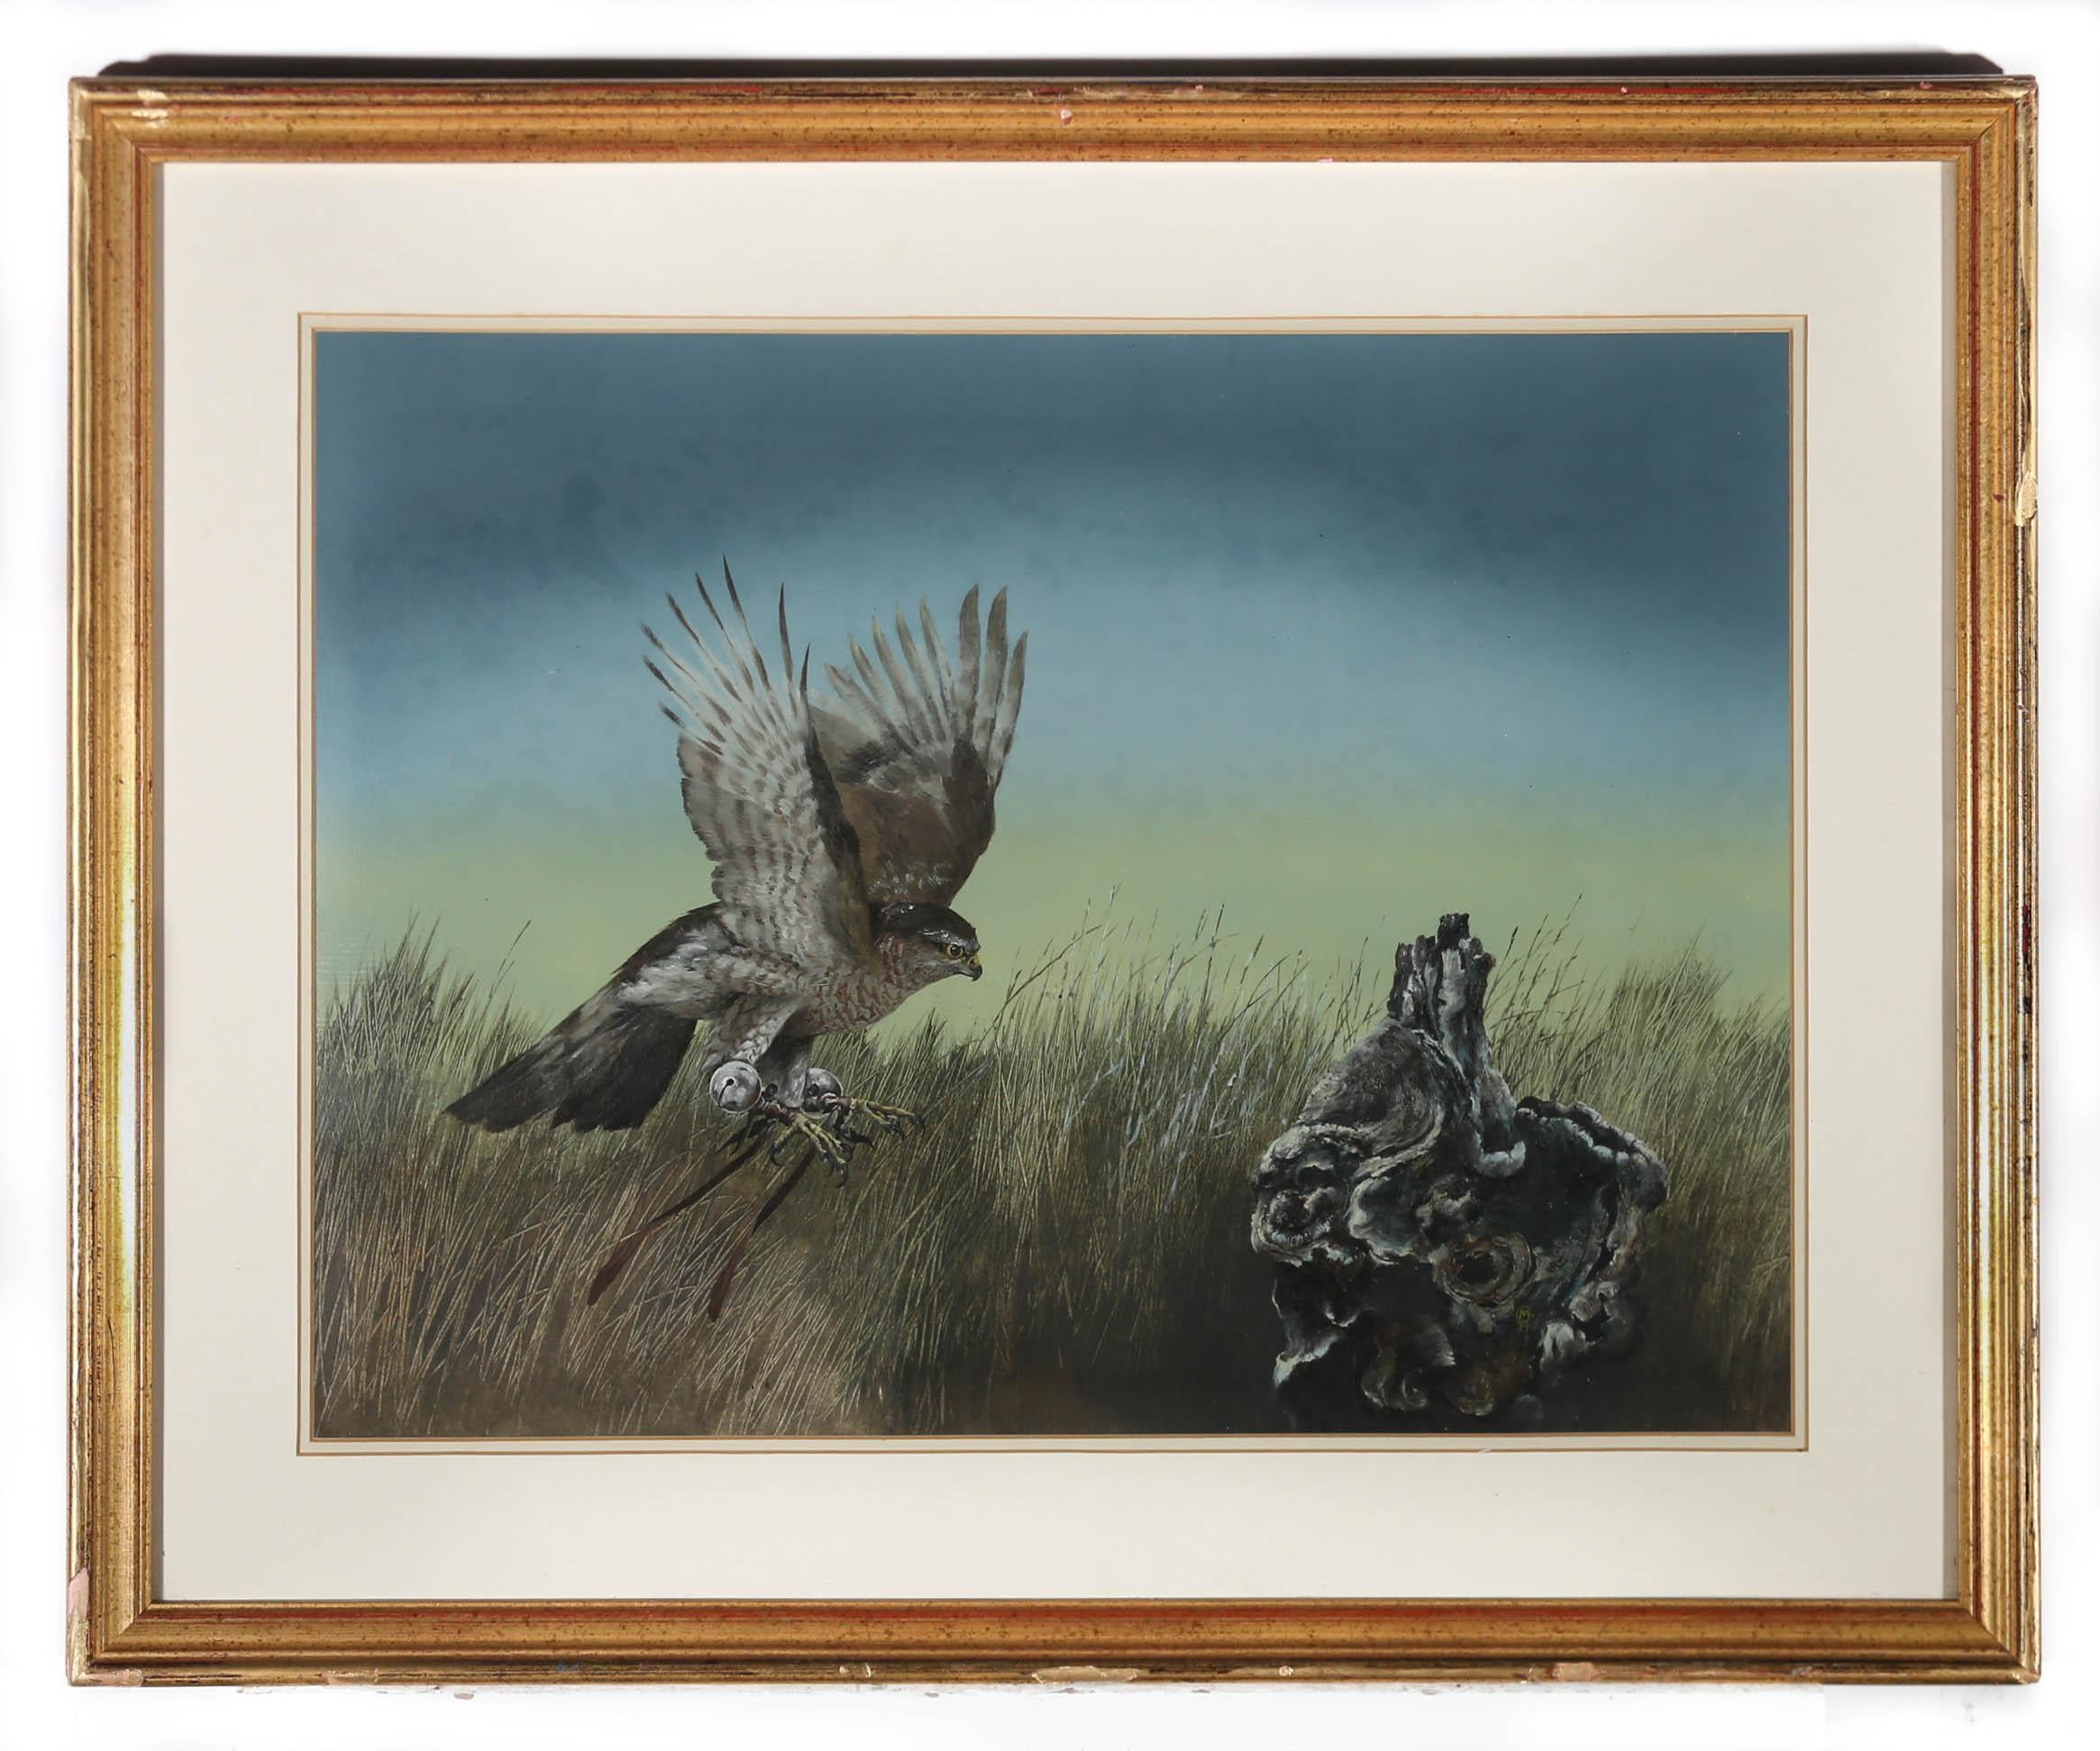 Scène originale à la gouache de l'artiste animalier Martin Lande, représentant un oiseau de proie se posant dans un paysage couvert. Signé avec le monogramme de l'artiste en bas à droite. Bien présenté dans un beau cadre doré. Sur le papier.